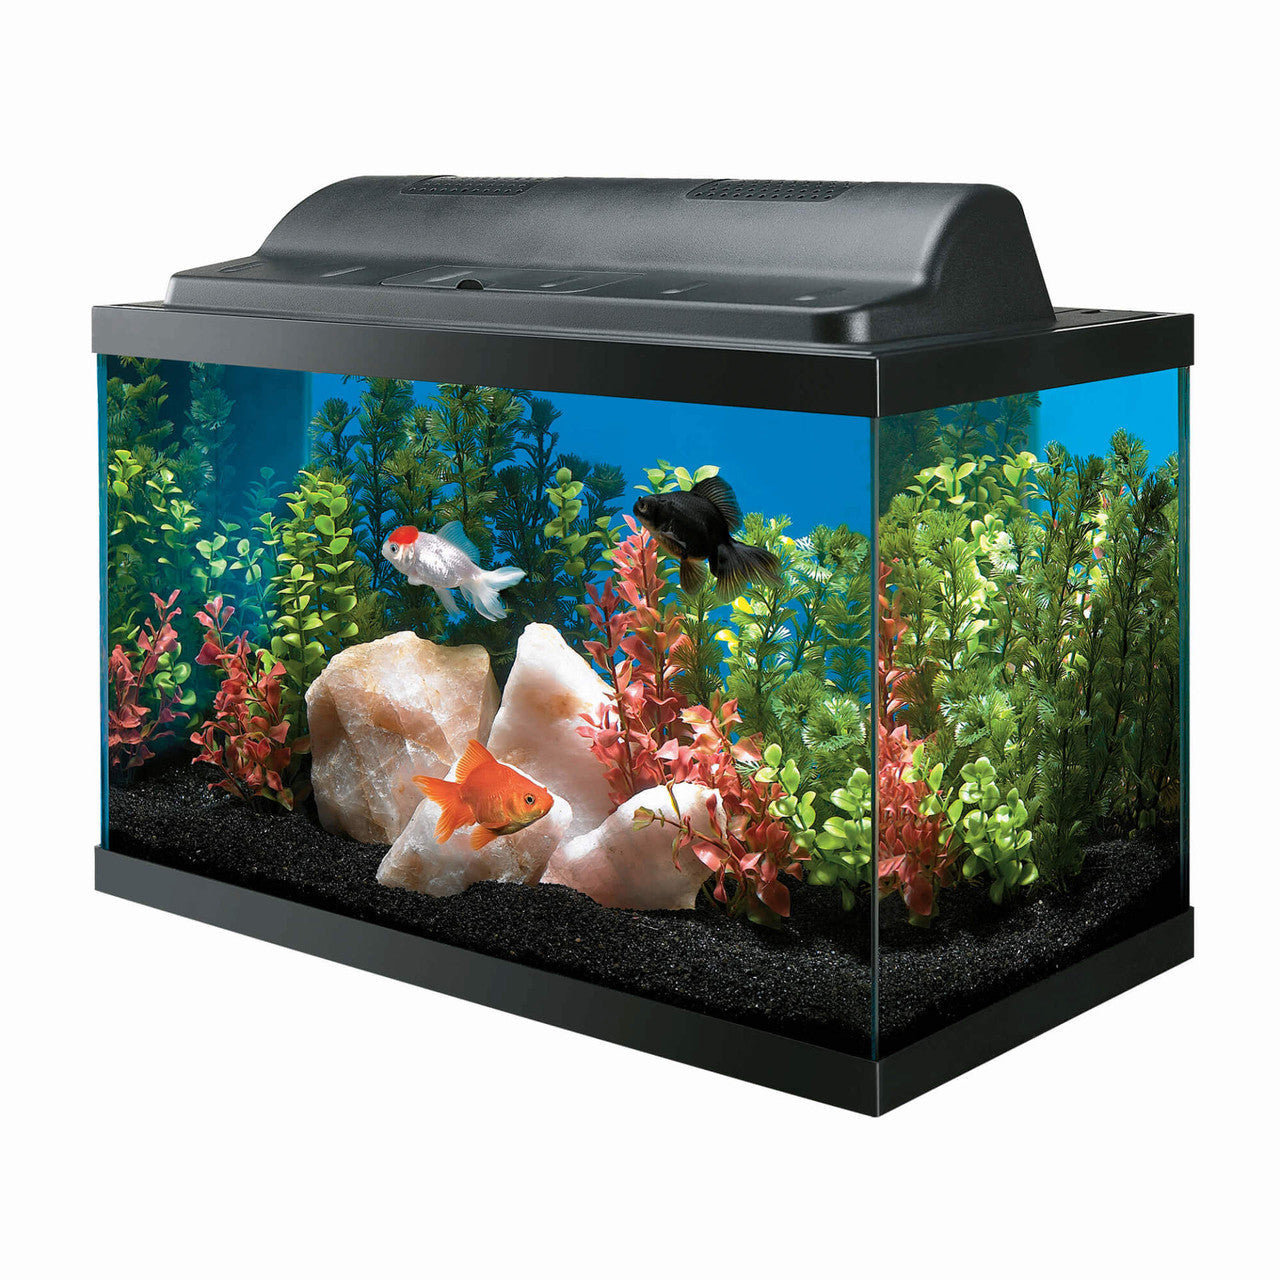 Aqueon Incandescent Aquarium Kit 10